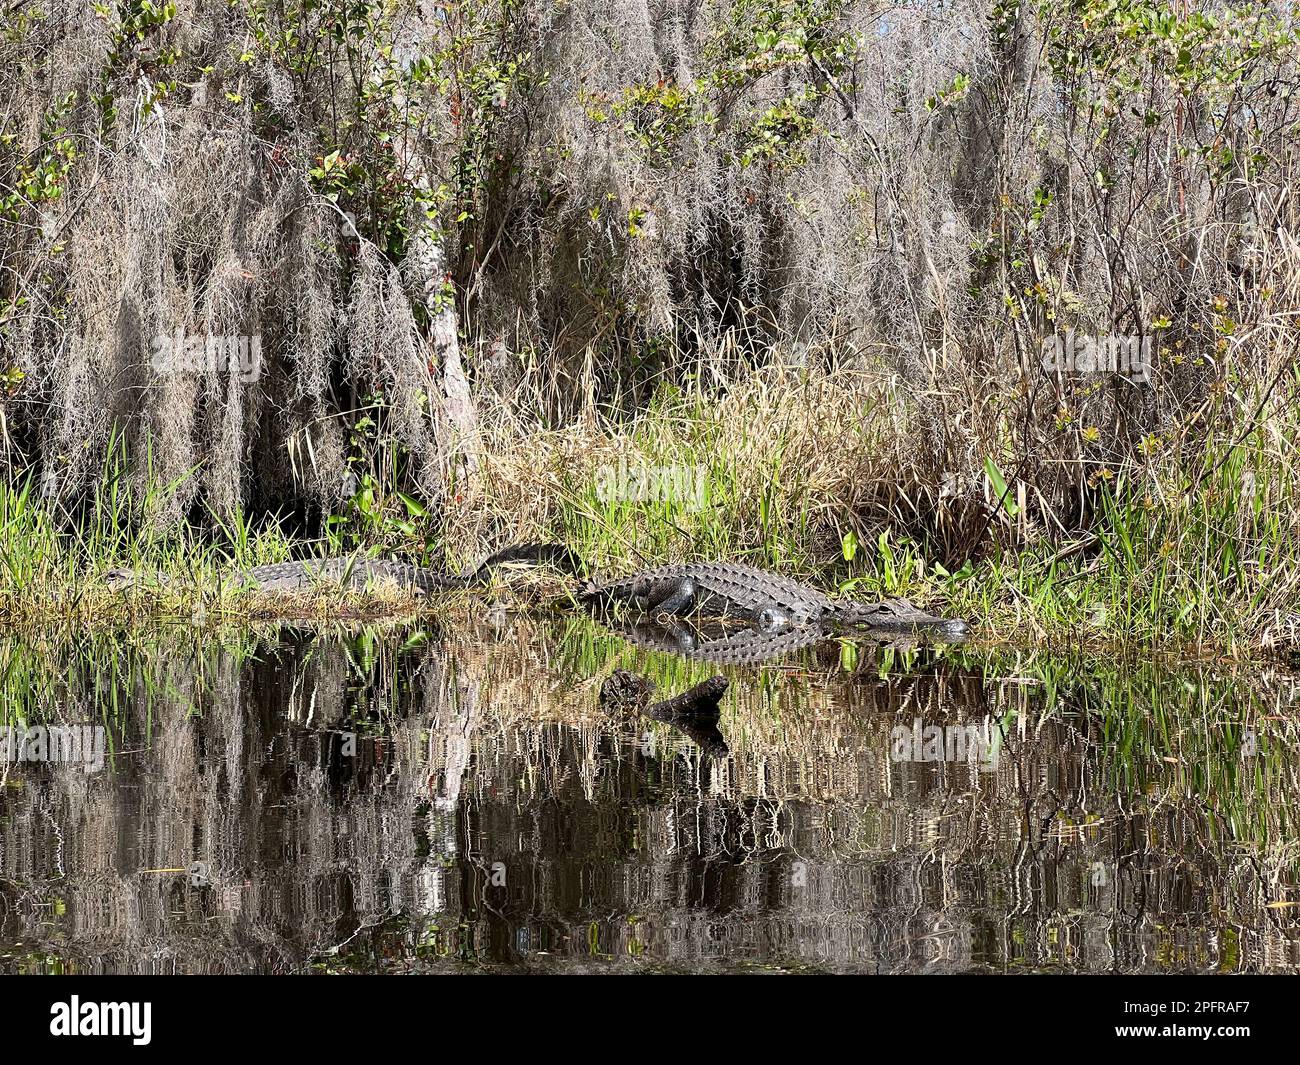 Alligatoren ruhen sich am Ufer im Okefenokee National Wildlife Refuge aus, Nordamerikas größtem Schwarzwassersumpf-Habitat. Stockfoto